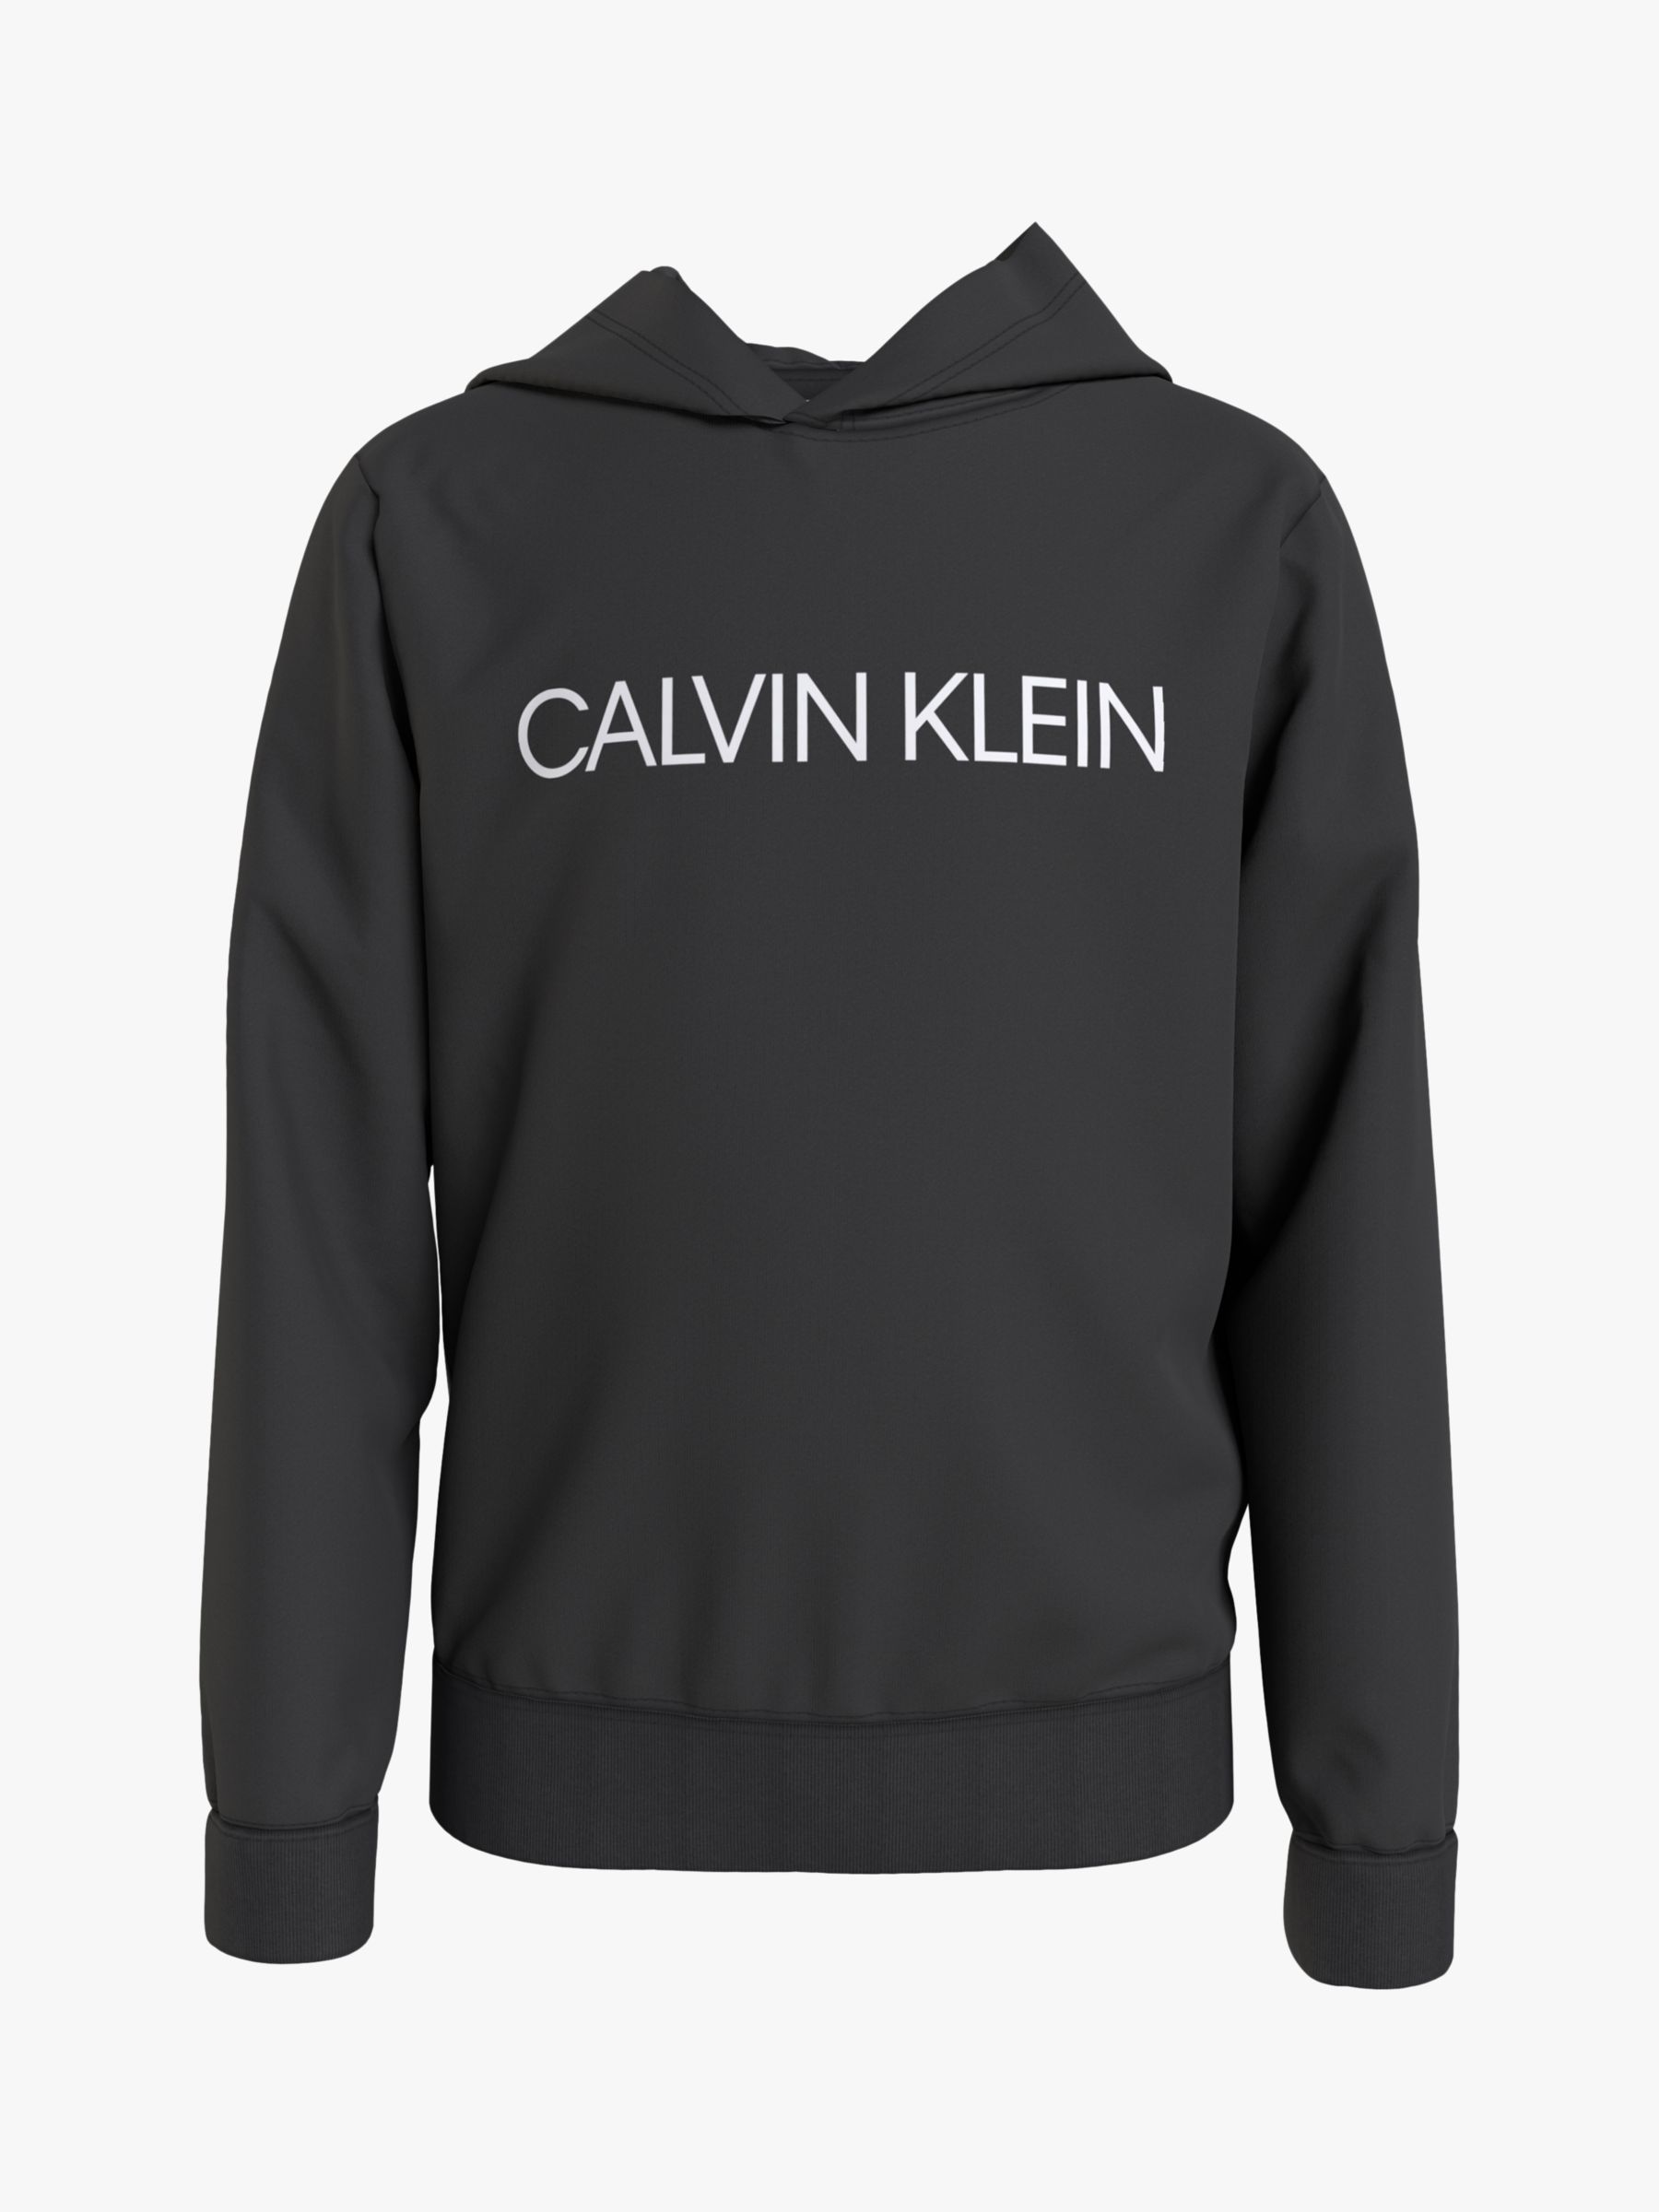 Calvin Klein Kids' Institutional Logo Cotton Hoodie, CK Black, 4 years